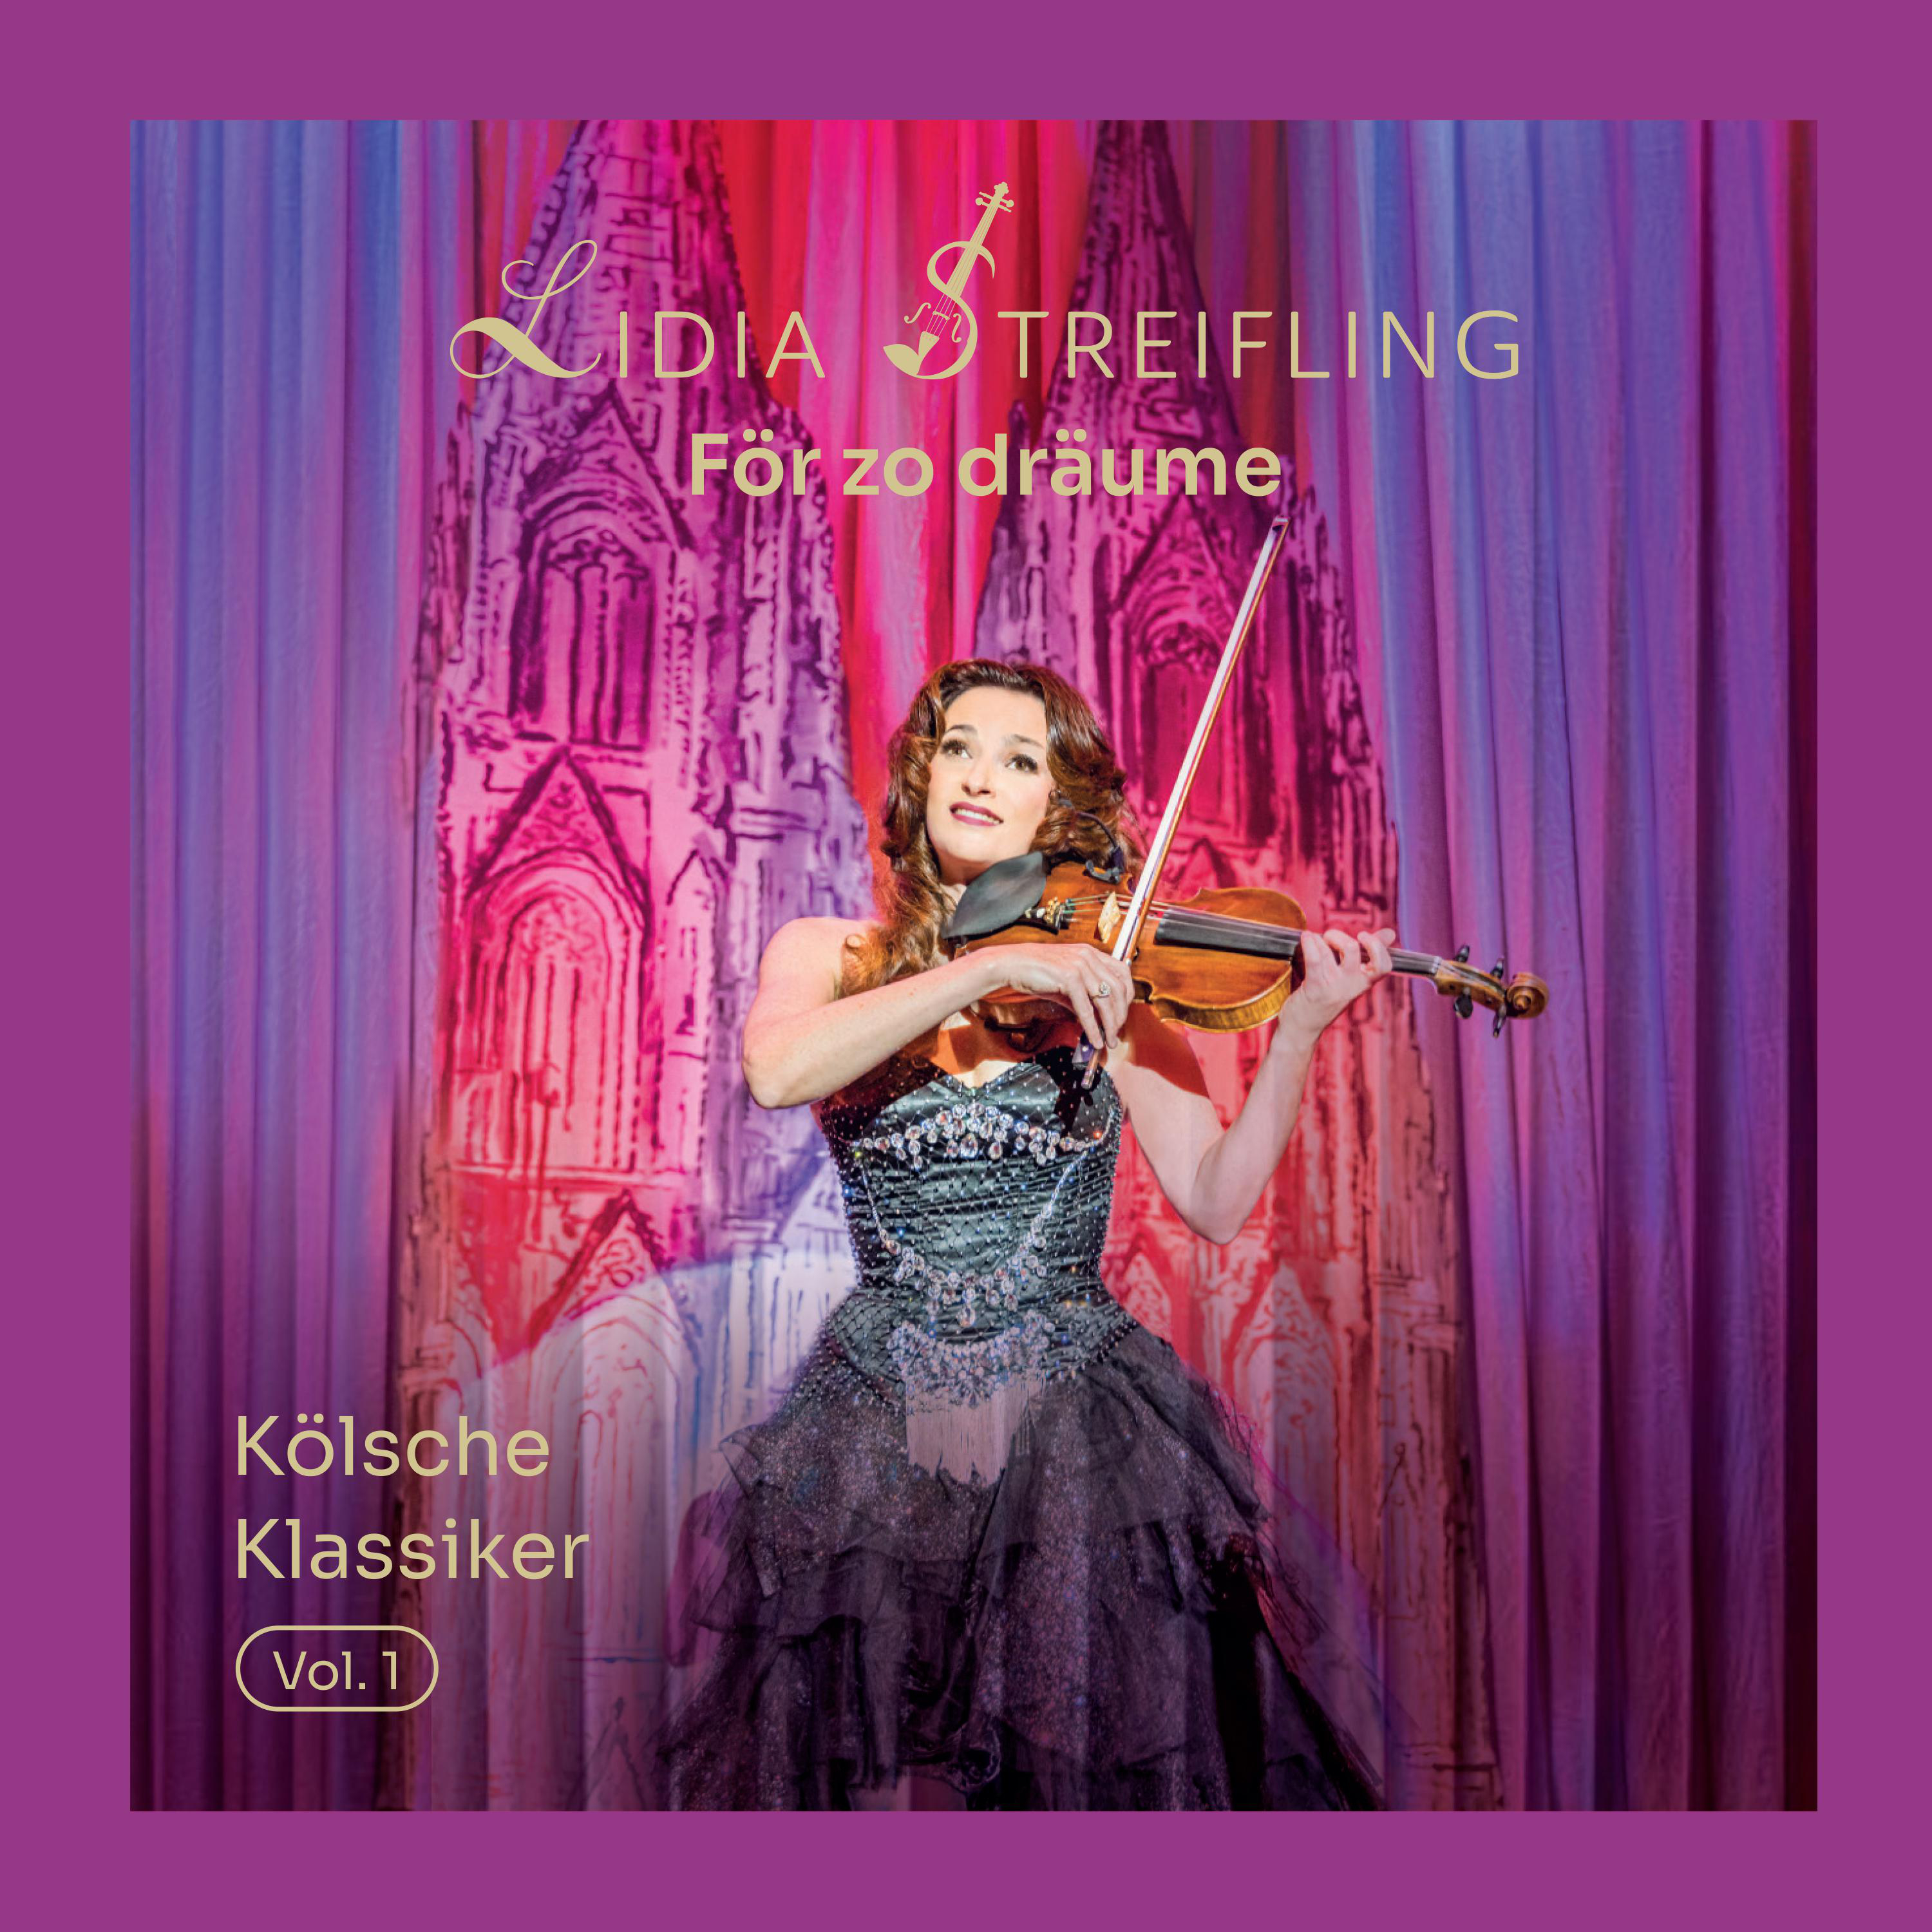 Kölsche Vol. zo - Klassiker Streifling - dräume Lidia (CD) - För 1